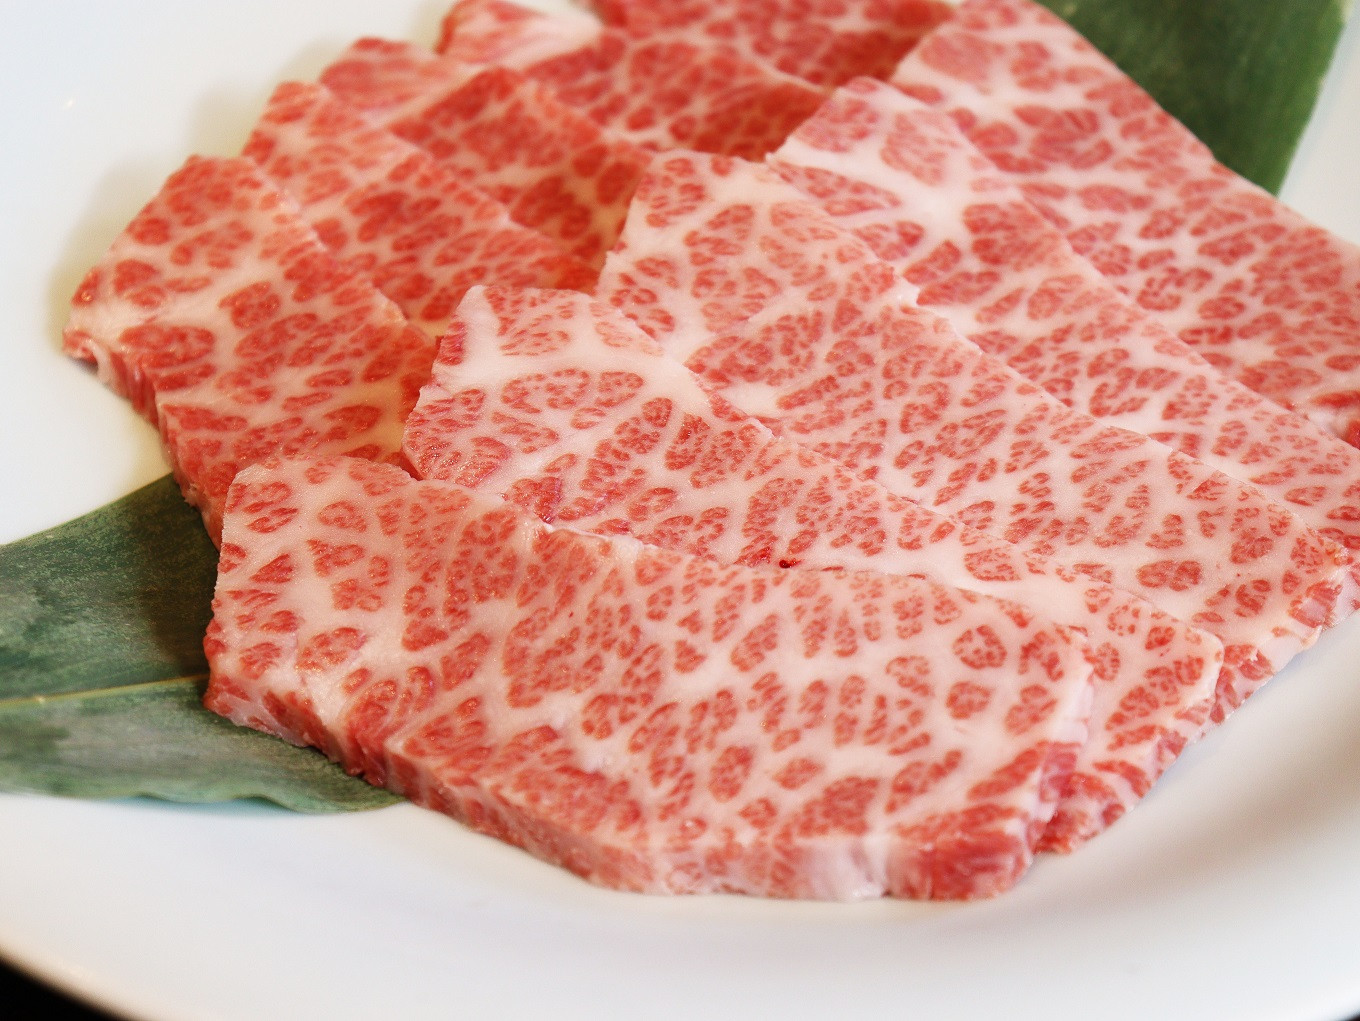 京都らしいきめ細やかで上品な味わいの肉を提供しています。